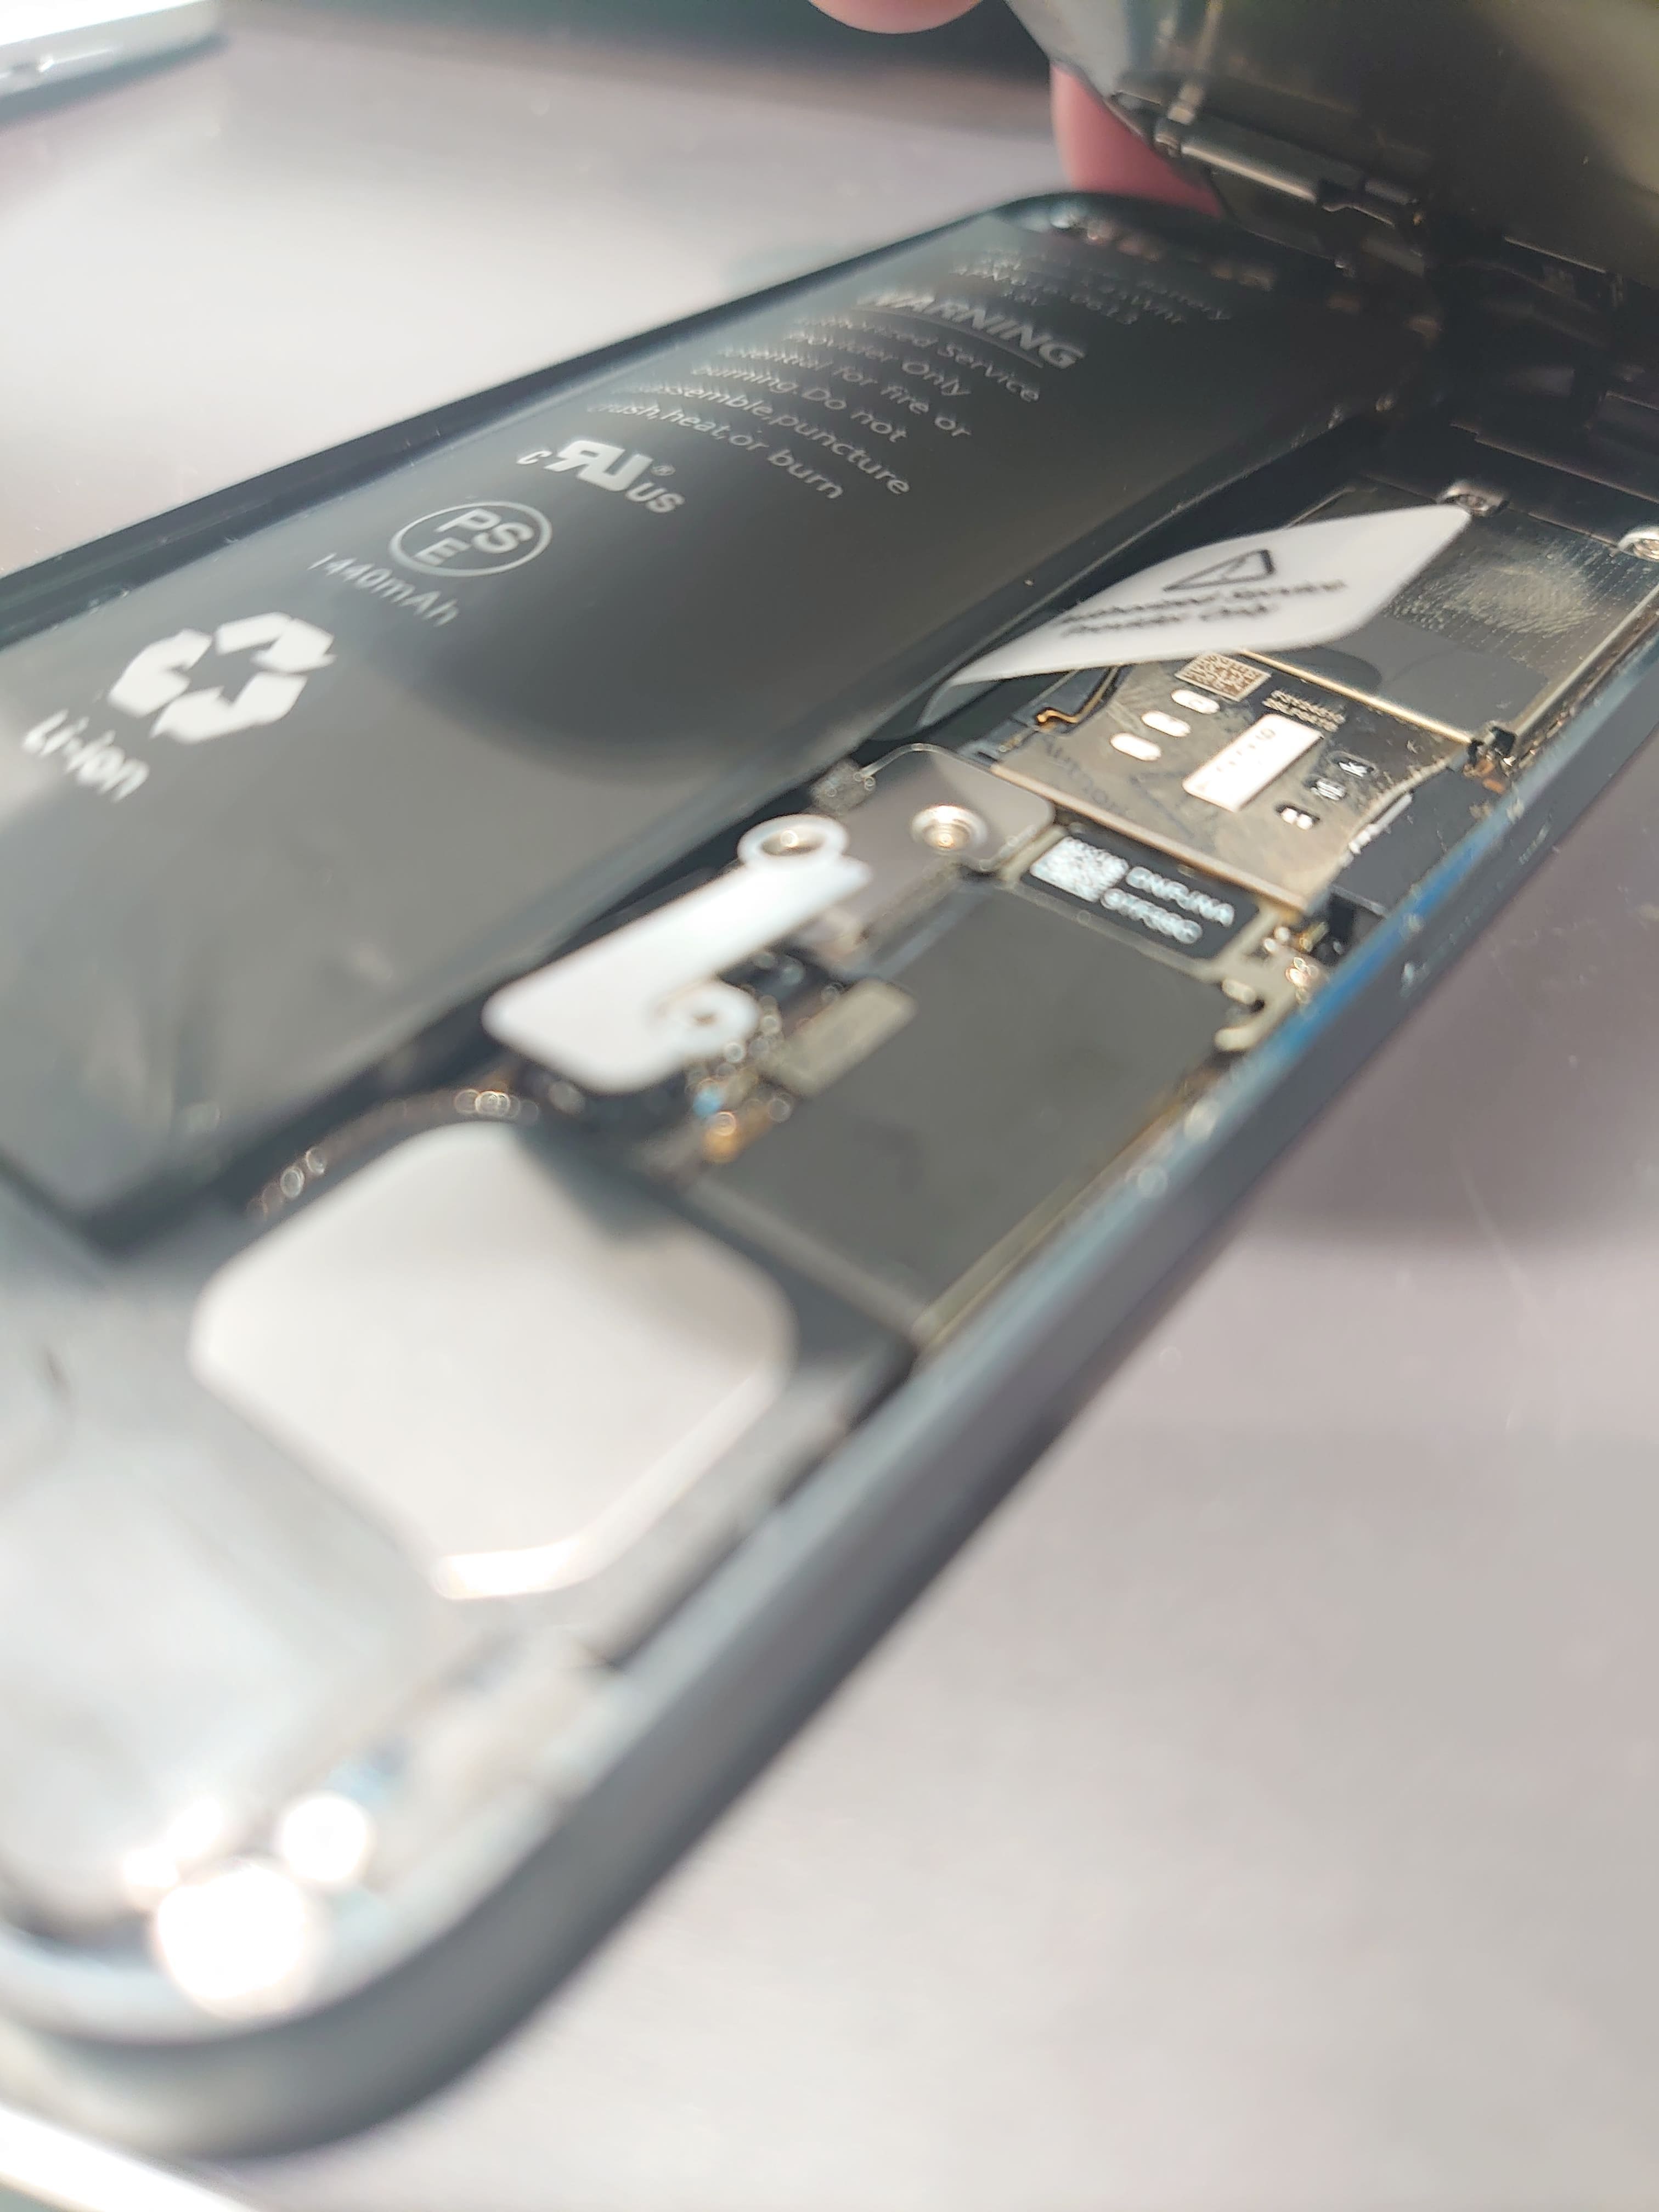 Iphone5 バッテリー膨張で画面が外れたiphone スマホ修理のスマホステーションのブログ